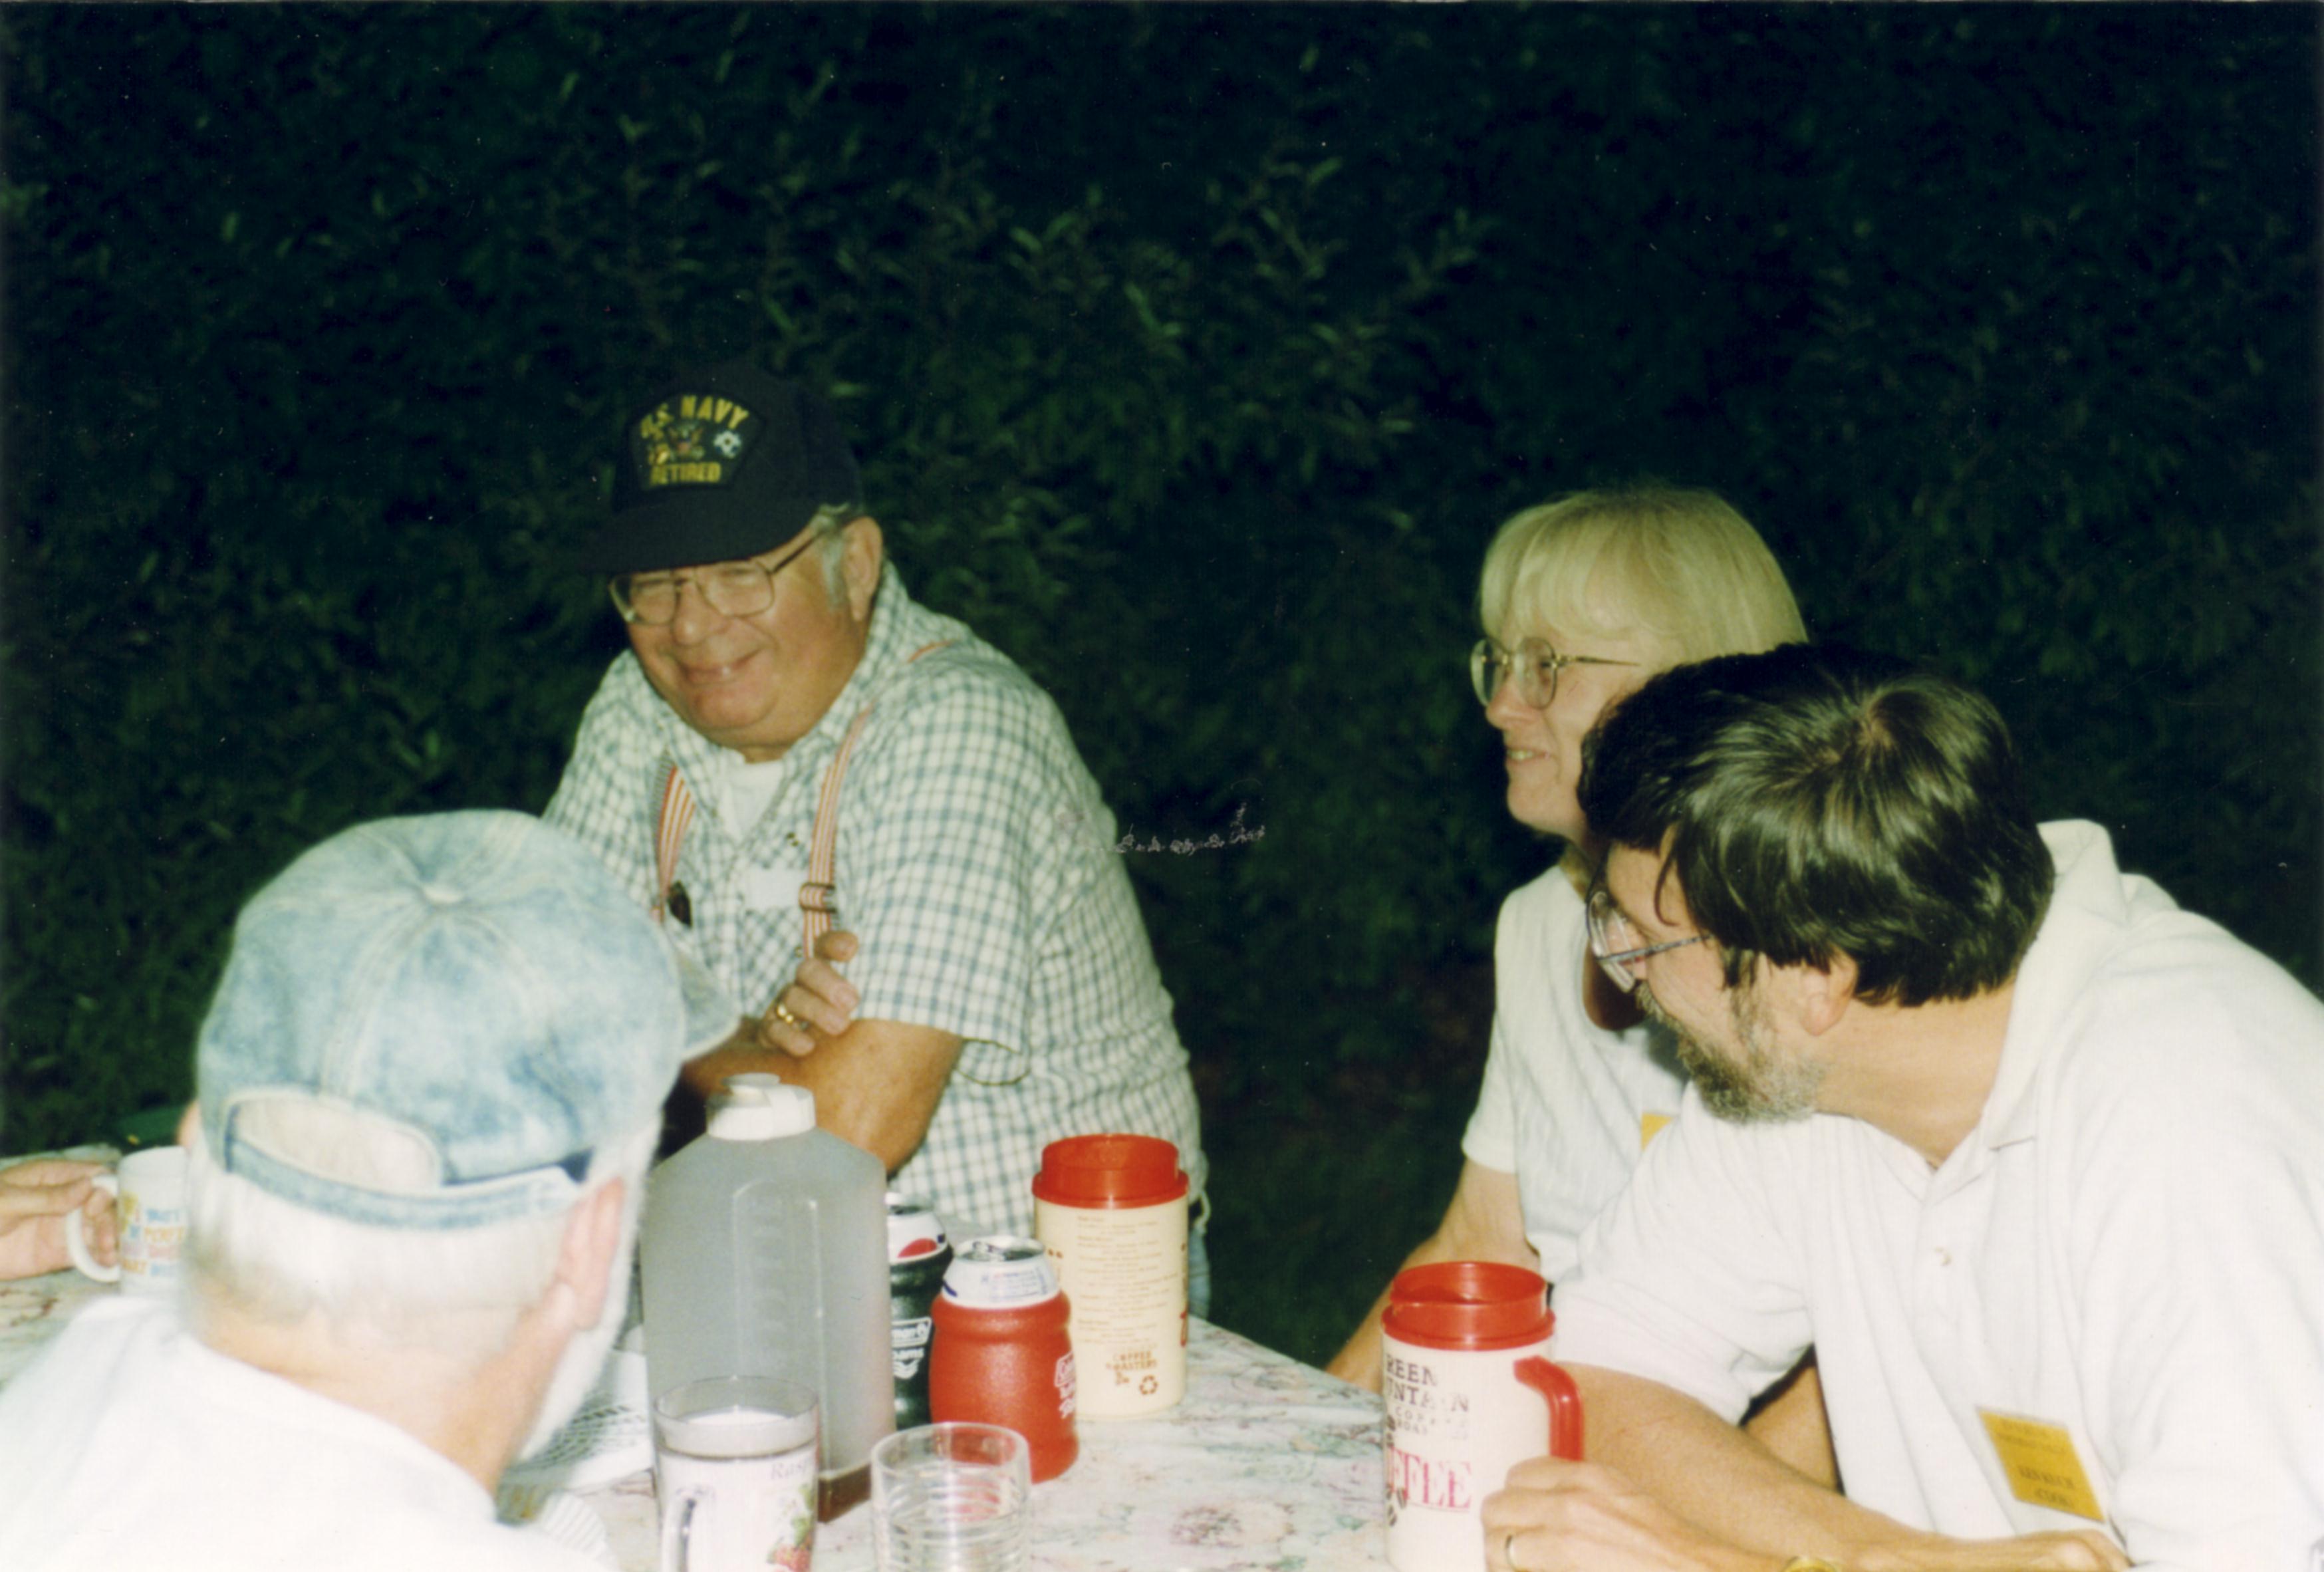 1997 Fred Thomas, Ken & Sheila Kuch